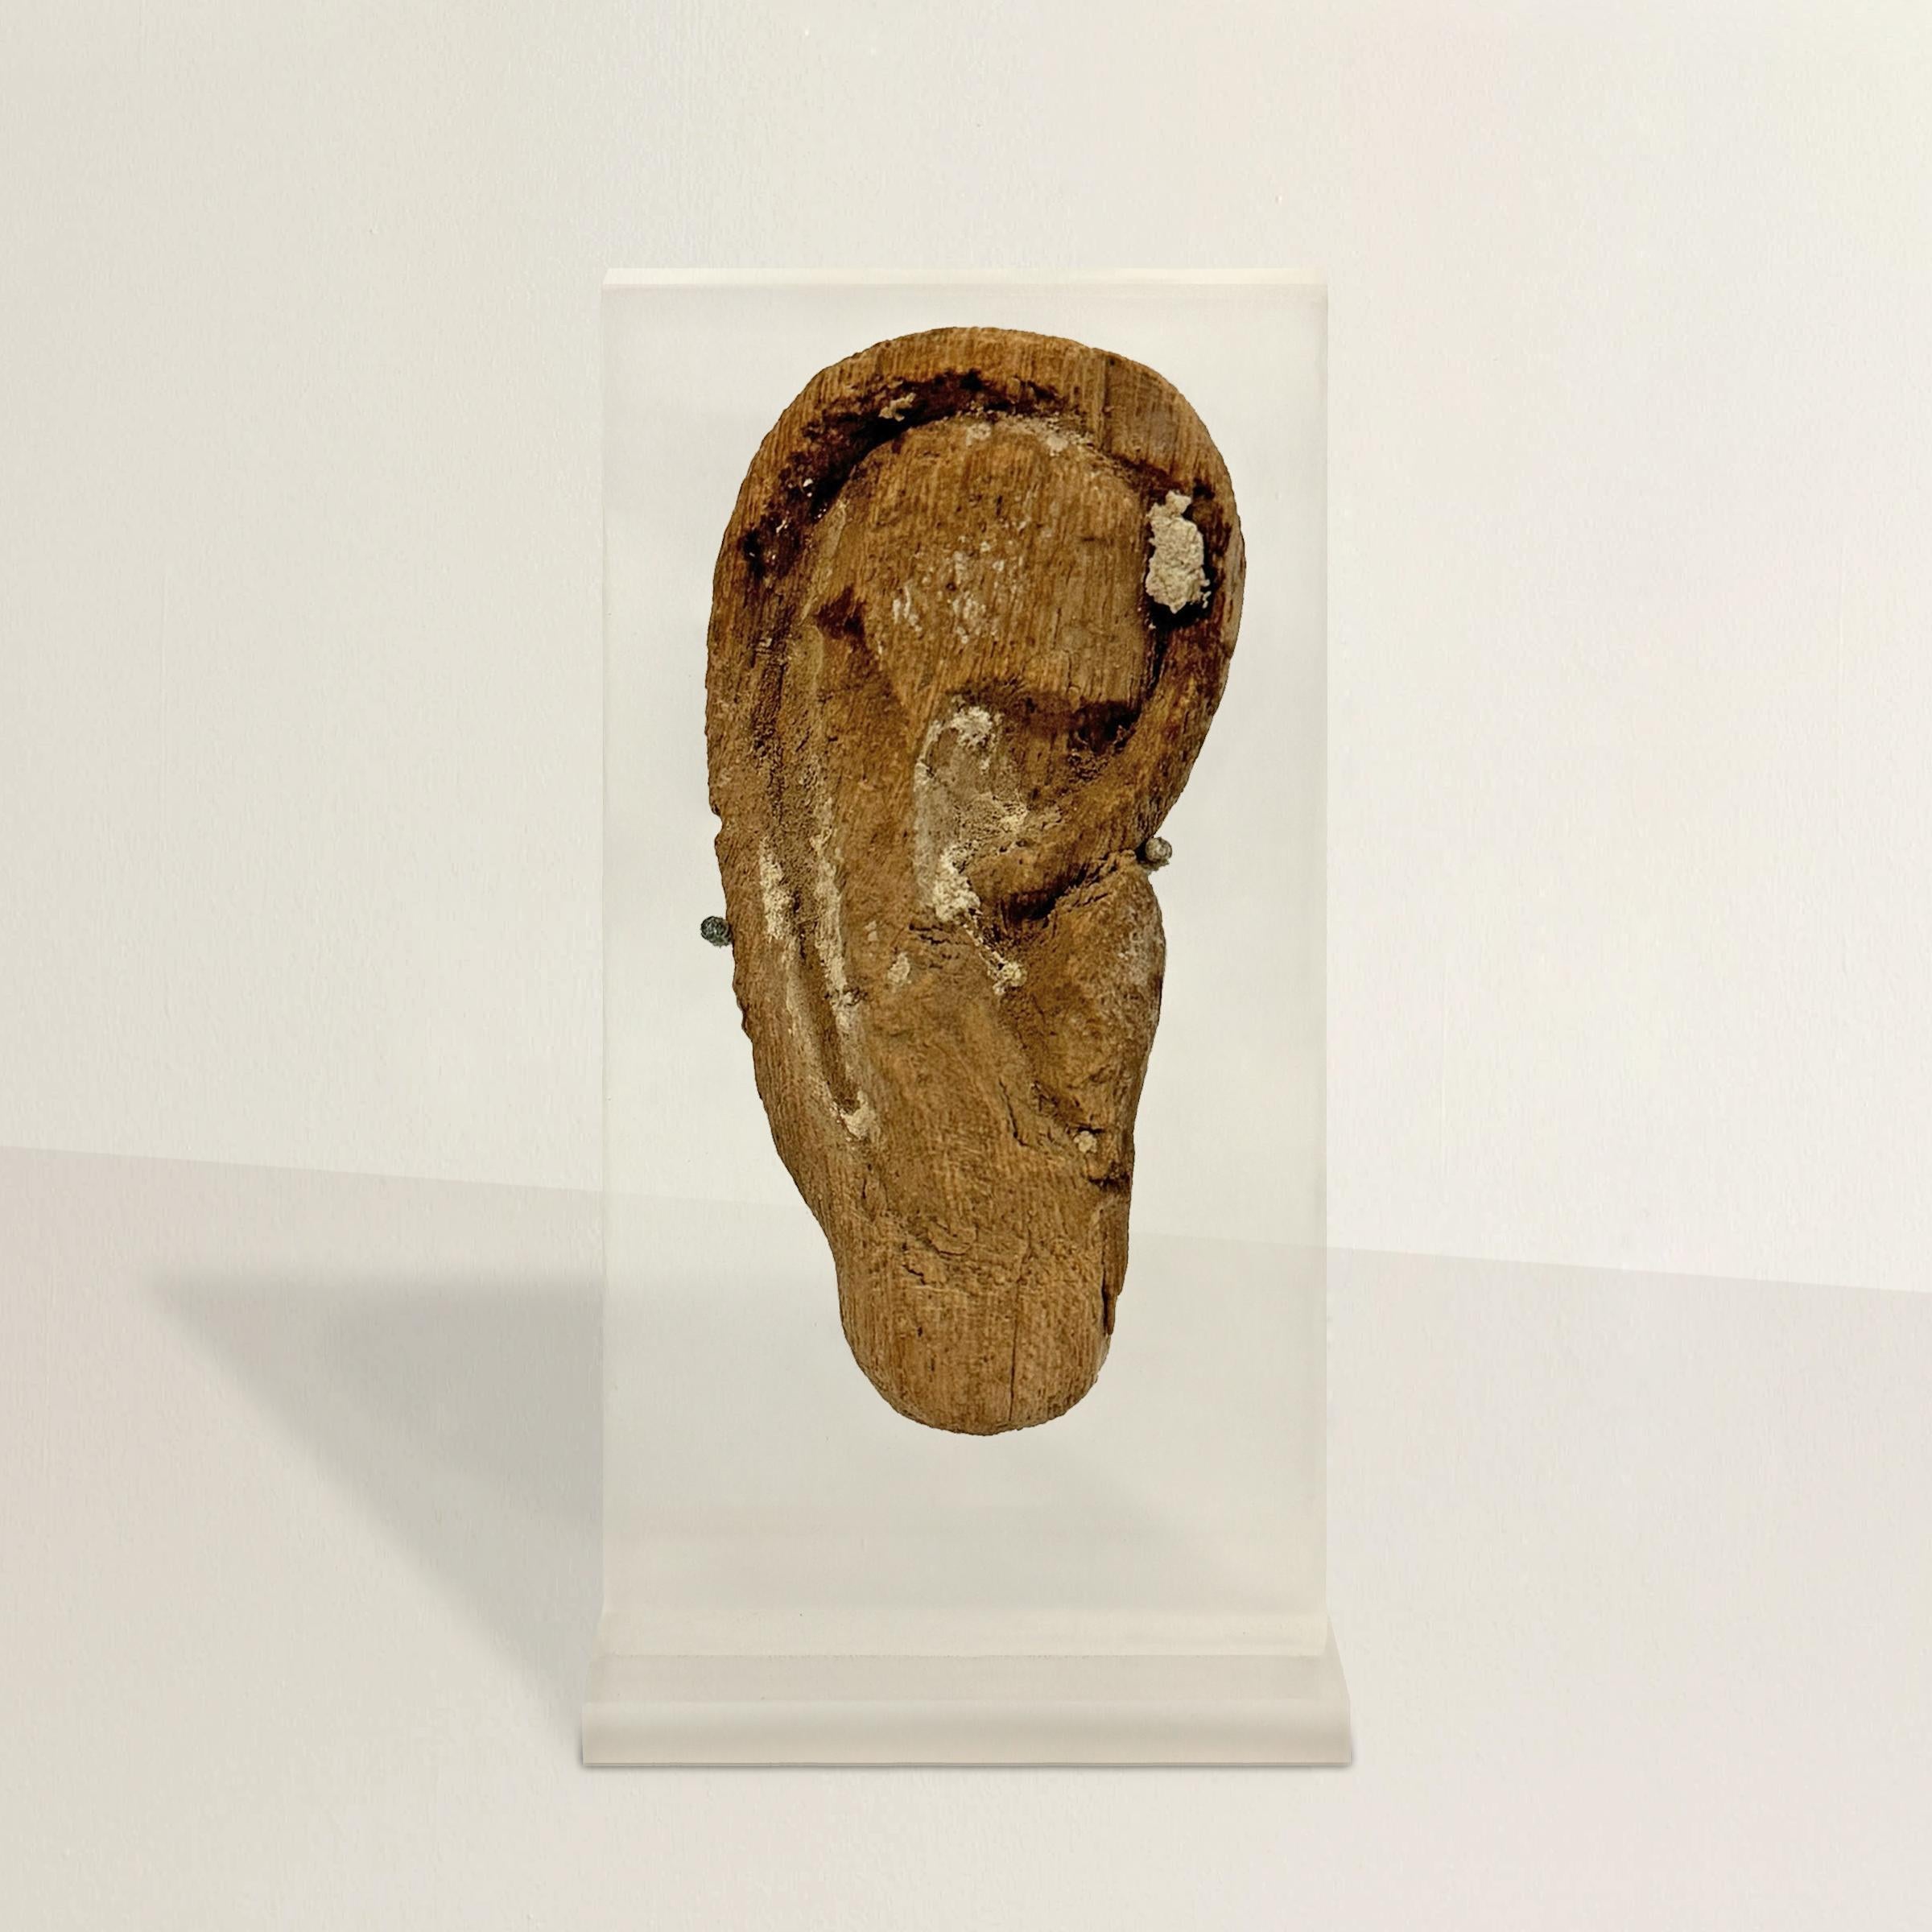 Cette oreille égyptienne en bois sculpté de la période tardive à la période ptolémaïque, qui faisait autrefois partie d'un masque de momie, constitue un témoignage poignant des coutumes et des croyances de l'Égypte ancienne. Datant de plus de 2500